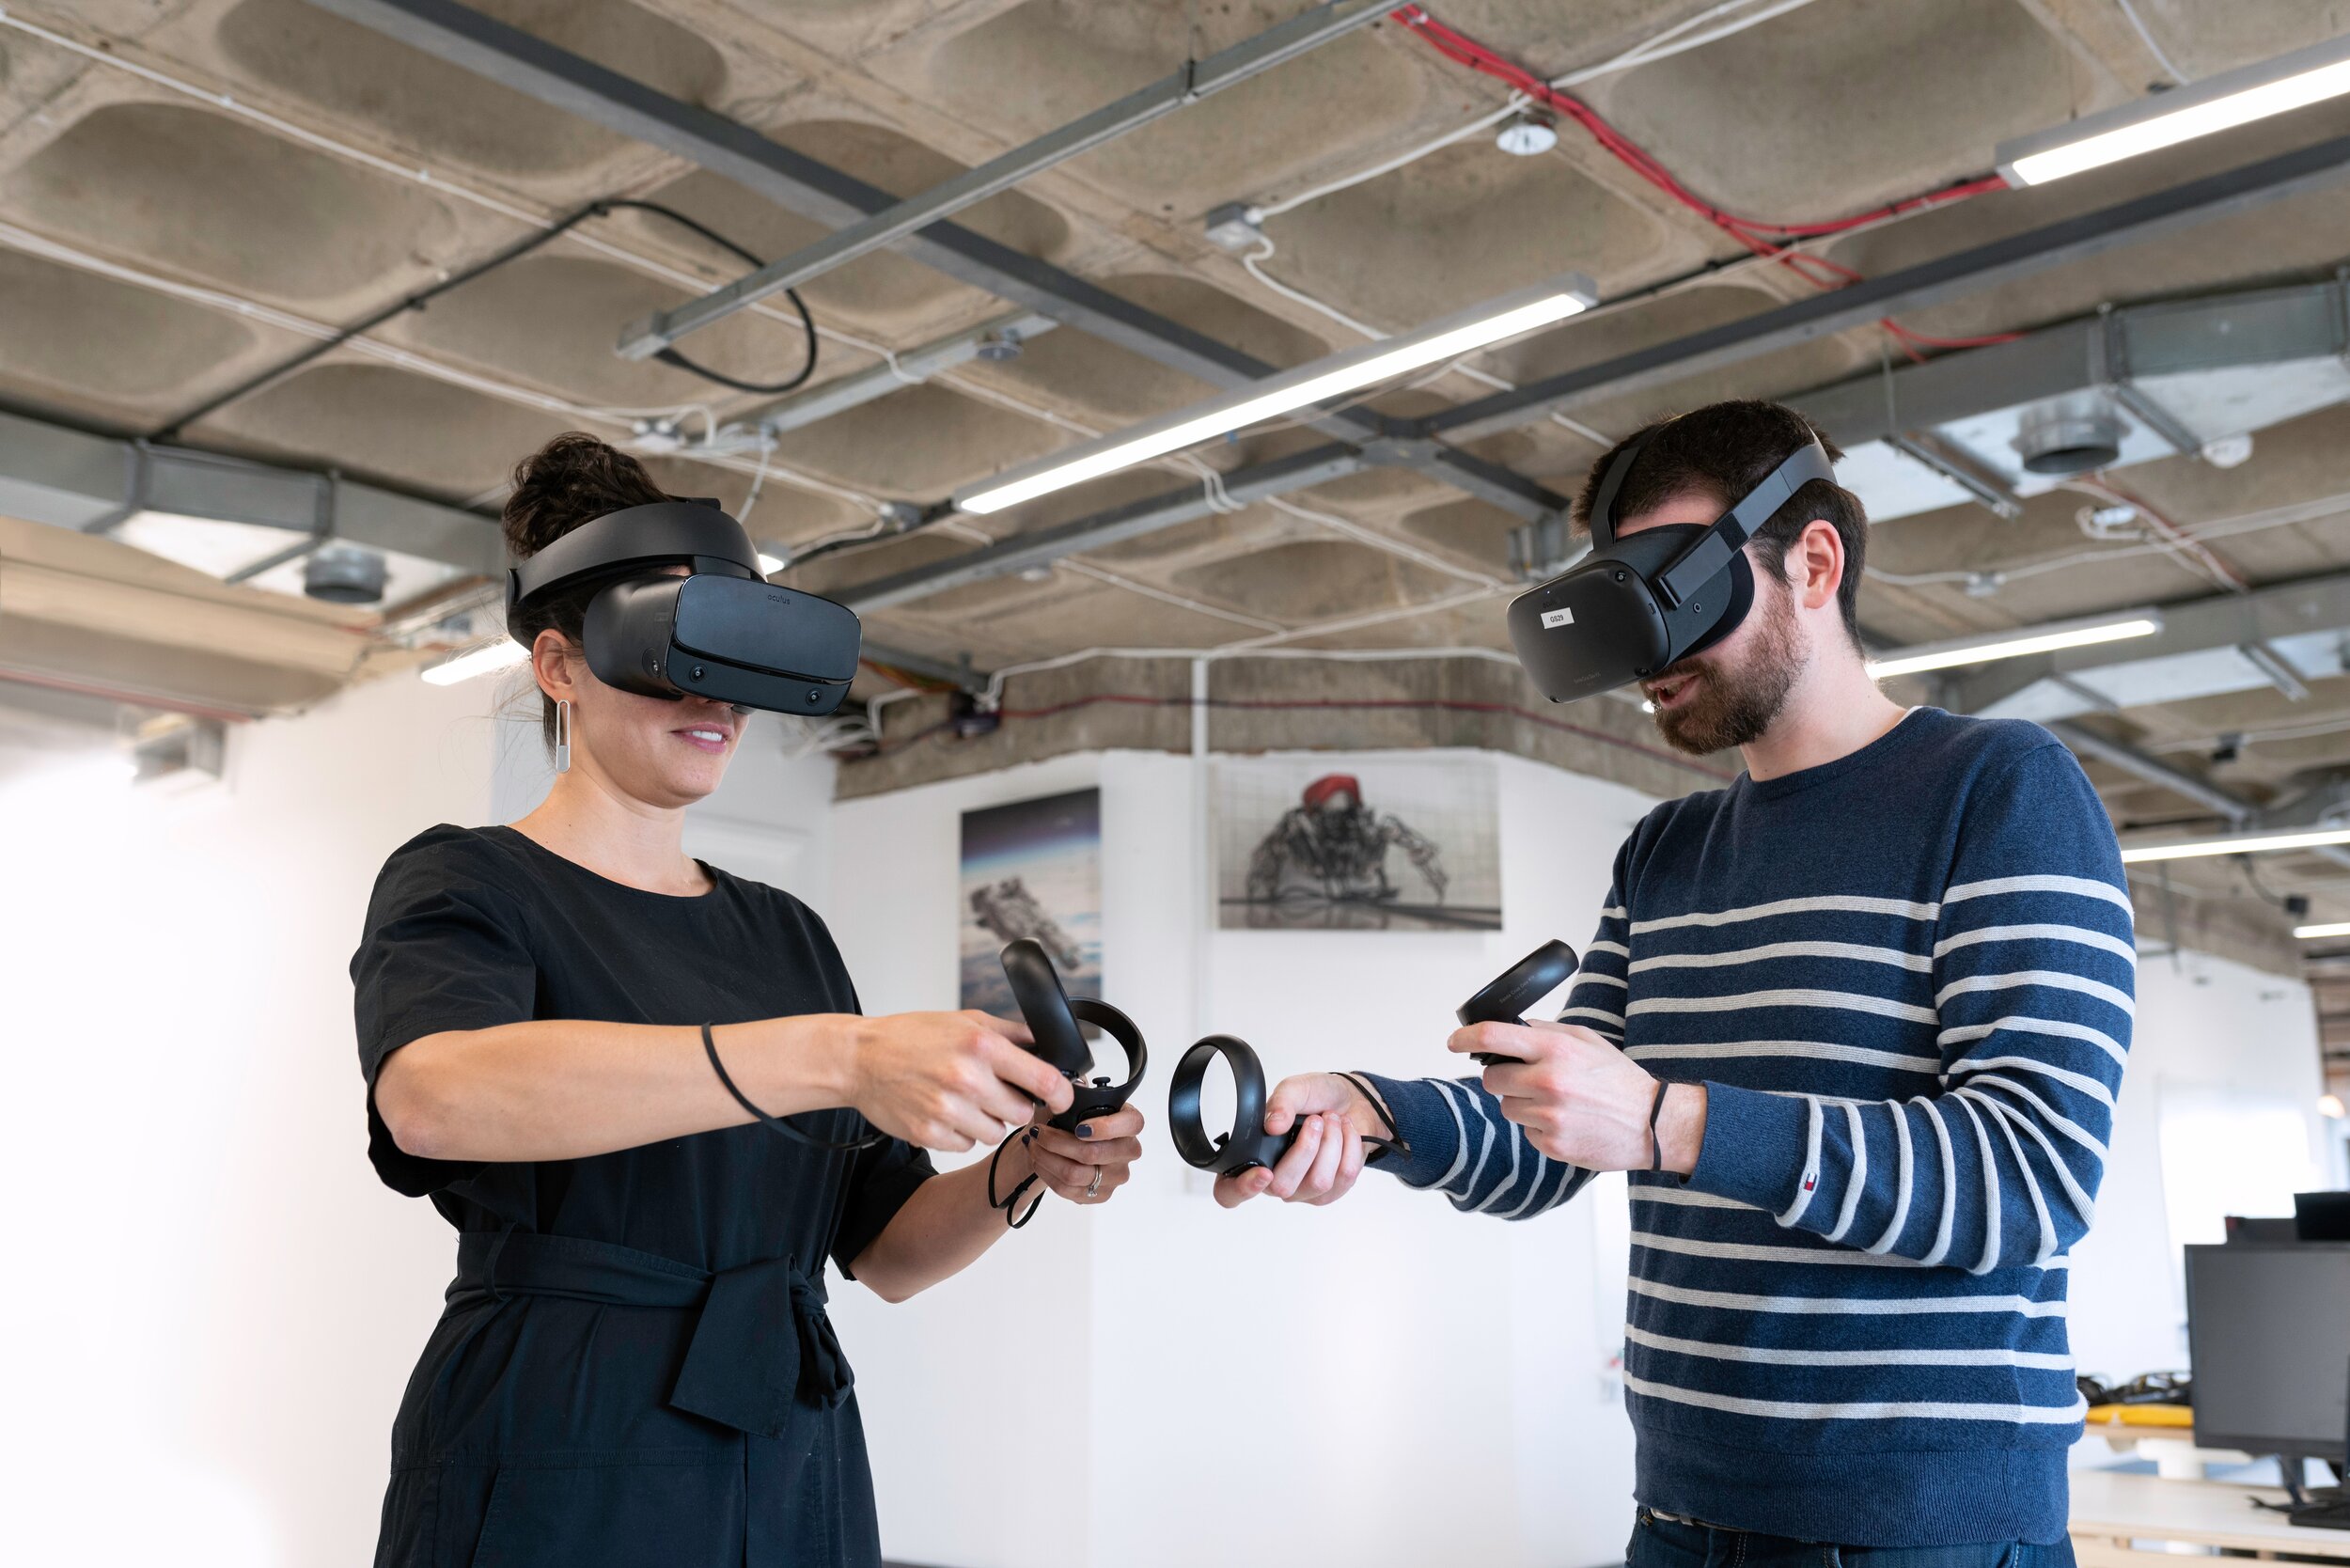 Жанры vr. Технологии виртуальной реальности. Технологии виртуальной и дополненной реальности. Очки виртуальной реальности в промышленности. VR реальность.